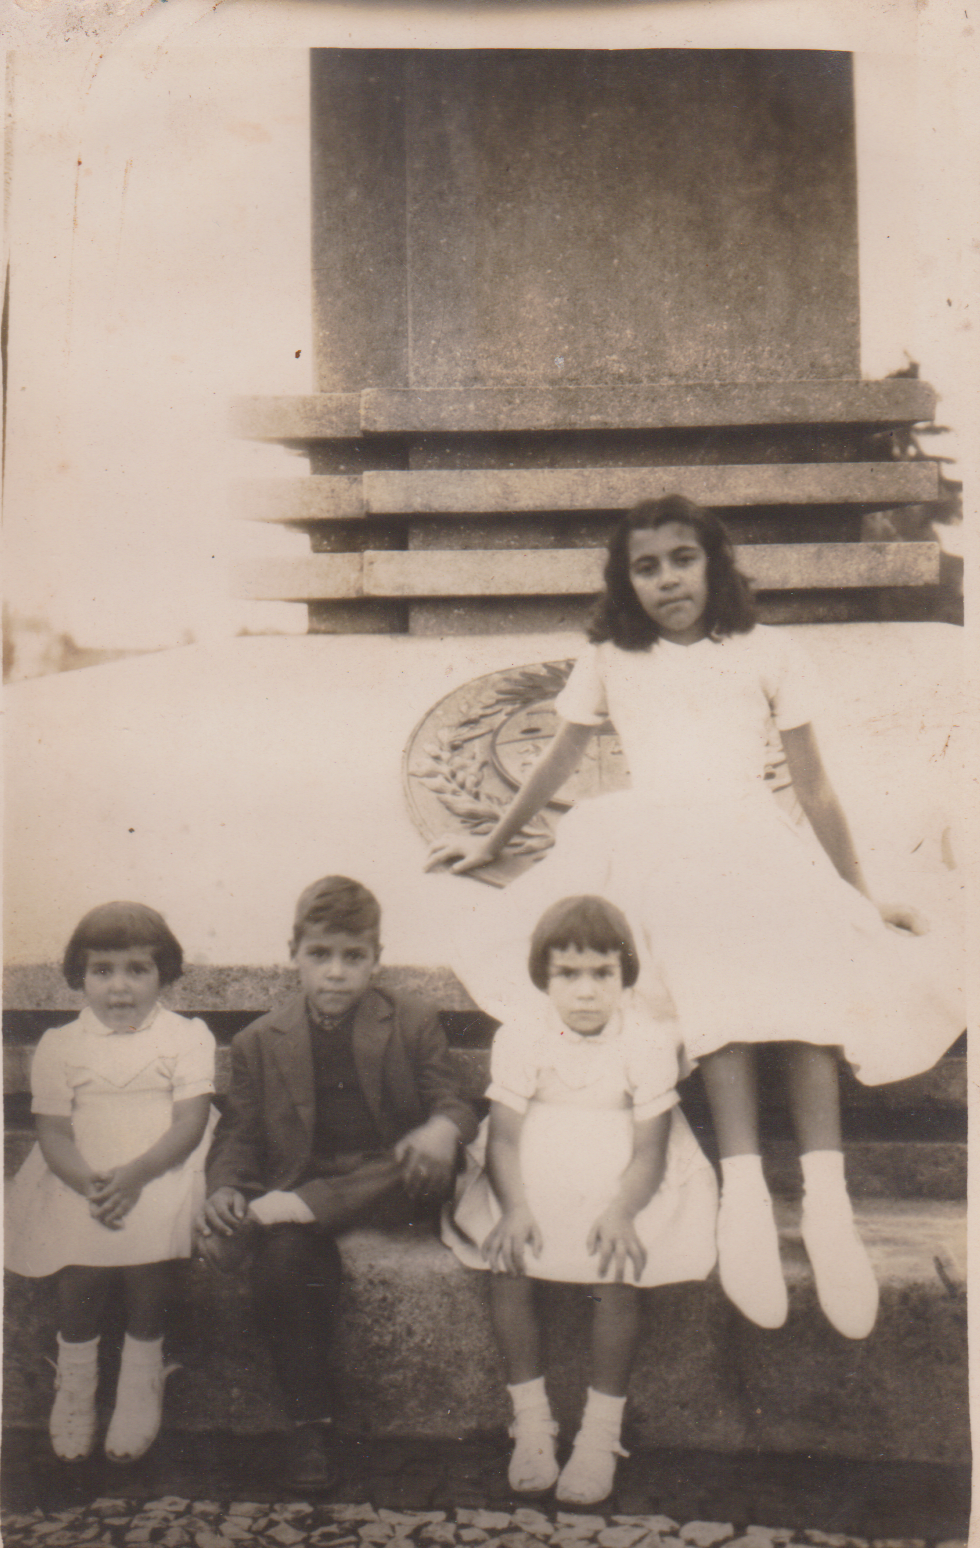 A imagem contém o registro de crianças sentadas no Obelisco da Praça Internacional